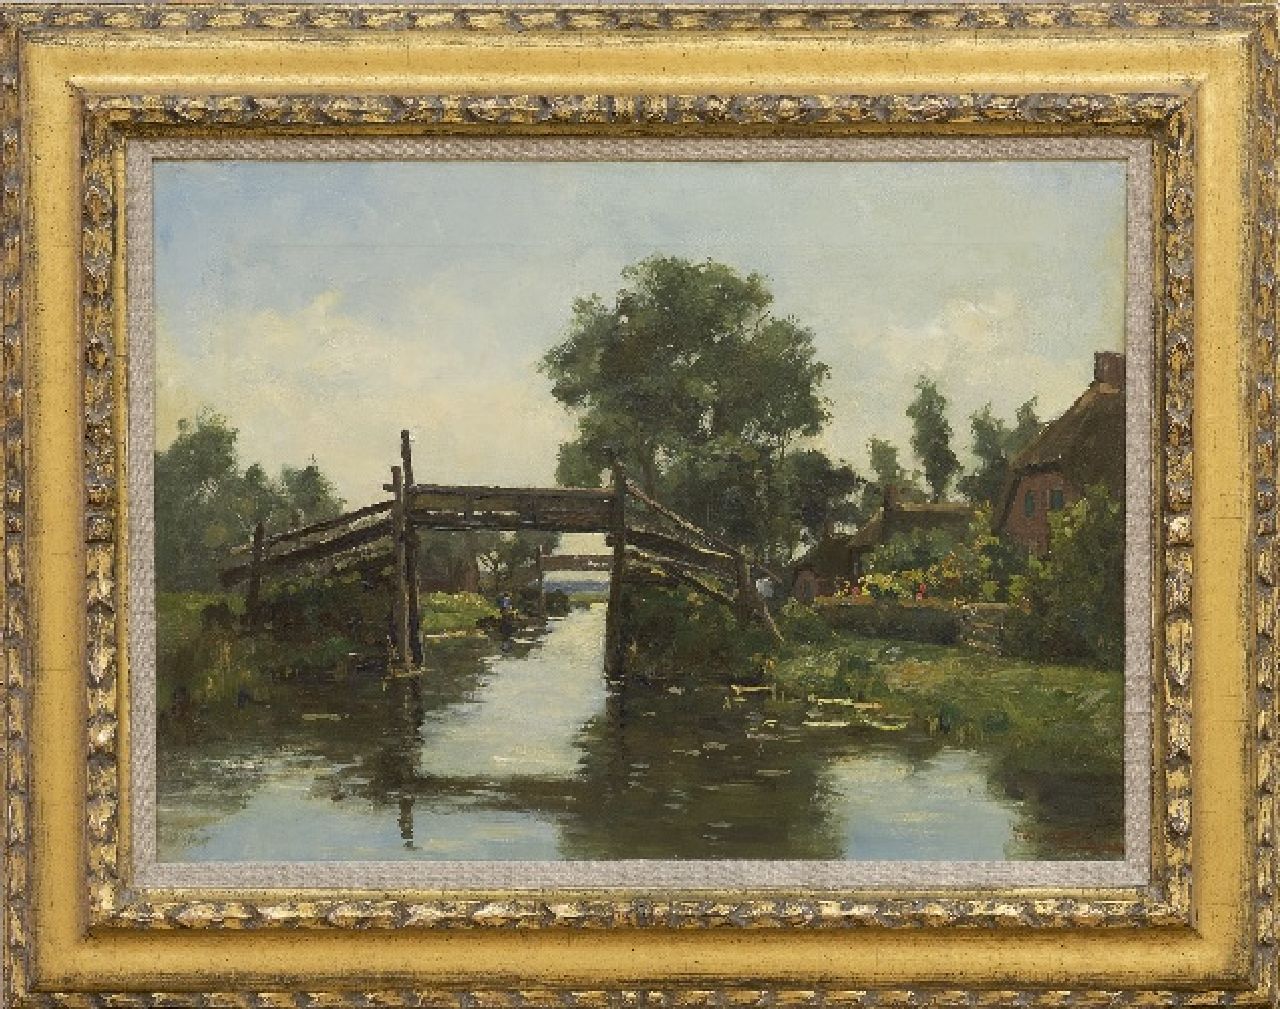 Beek B.A. van | Bernardus Antonie van Beek | Paintings offered for sale | Giethoorn, oil on canvas 37.5 x 51.7 cm, signed l.r.